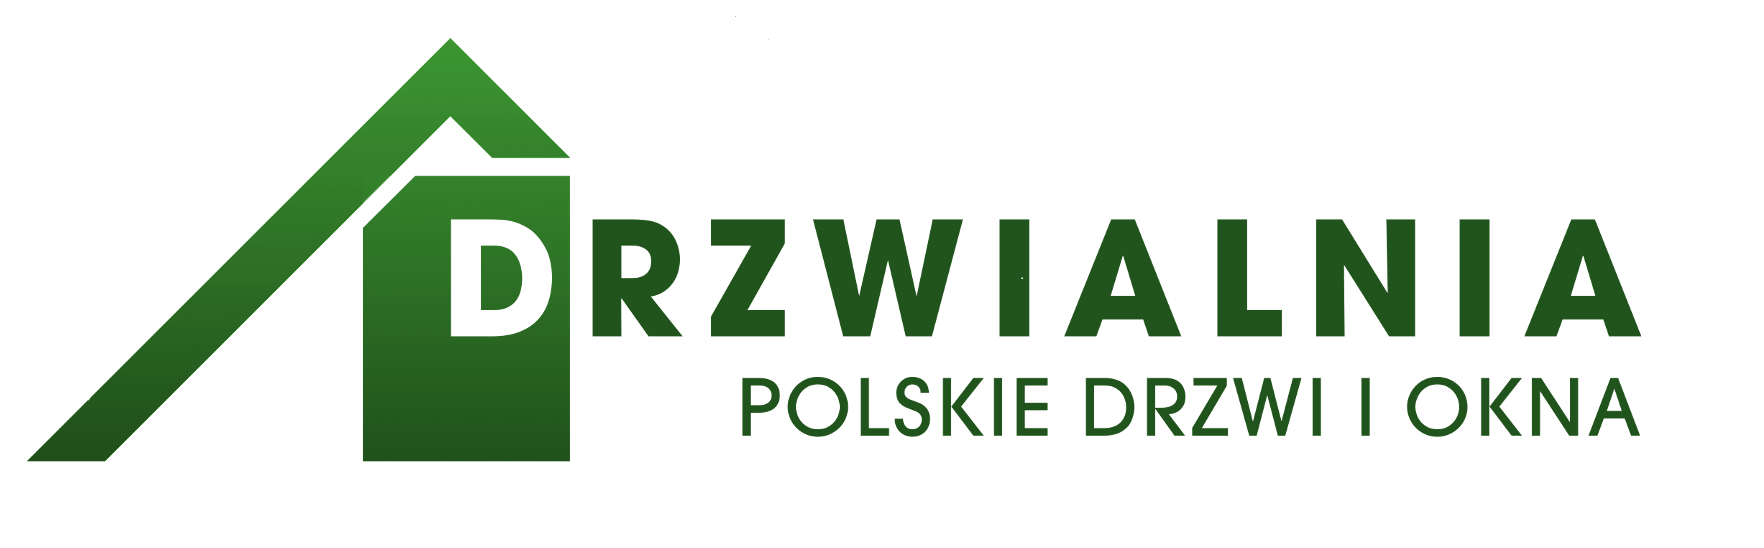 Drzwi z montażem Kraków - Drzwialnia